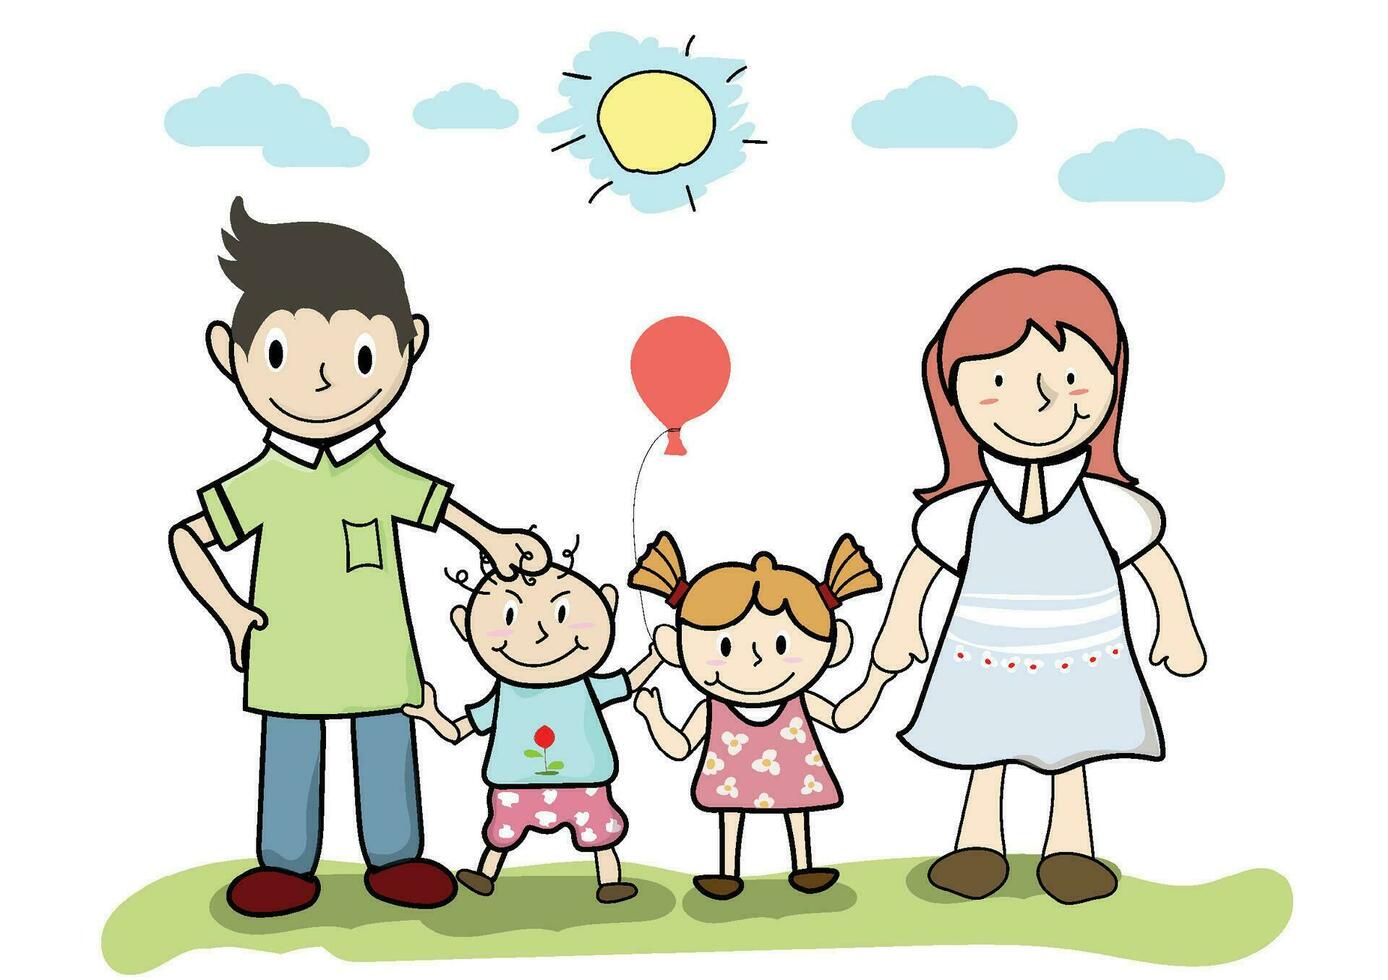 groß Familie. Vater und Mutter mit ihr Kinder sind stehend.glücklich Eltern mit Tochter und Sohn.Cartoon, entspannt Menschen, Vektor glücklich Familie und Karikatur Konzept.